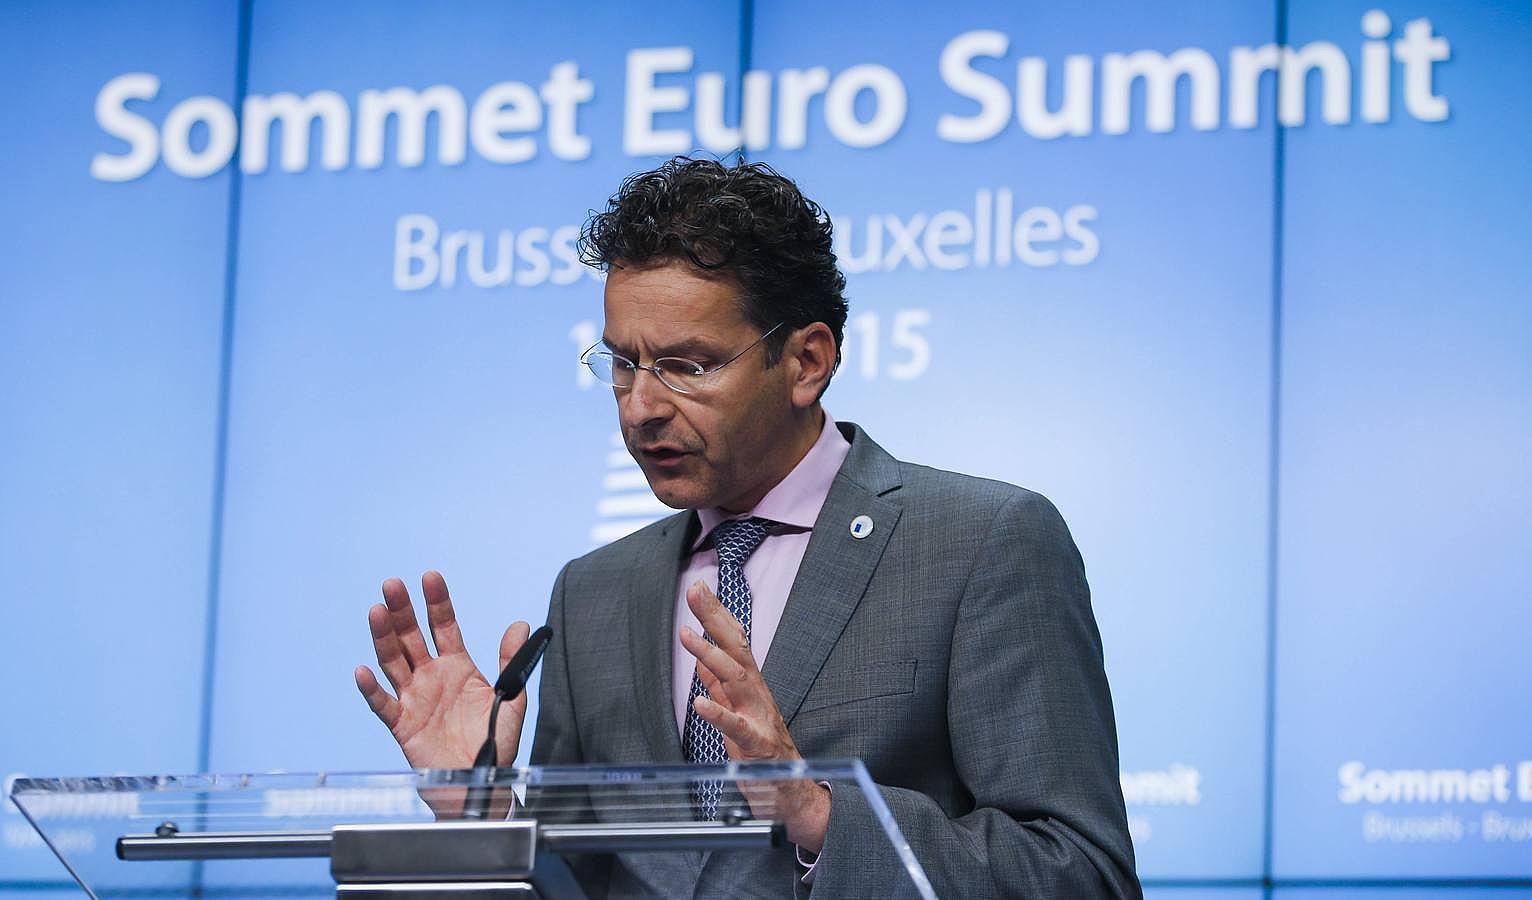 El presidente del Eurogrupo, Jeroen Dijsselbloem, durante la rueda de prensa celebrada en la sede del Consejo Europeo, en Bruselas